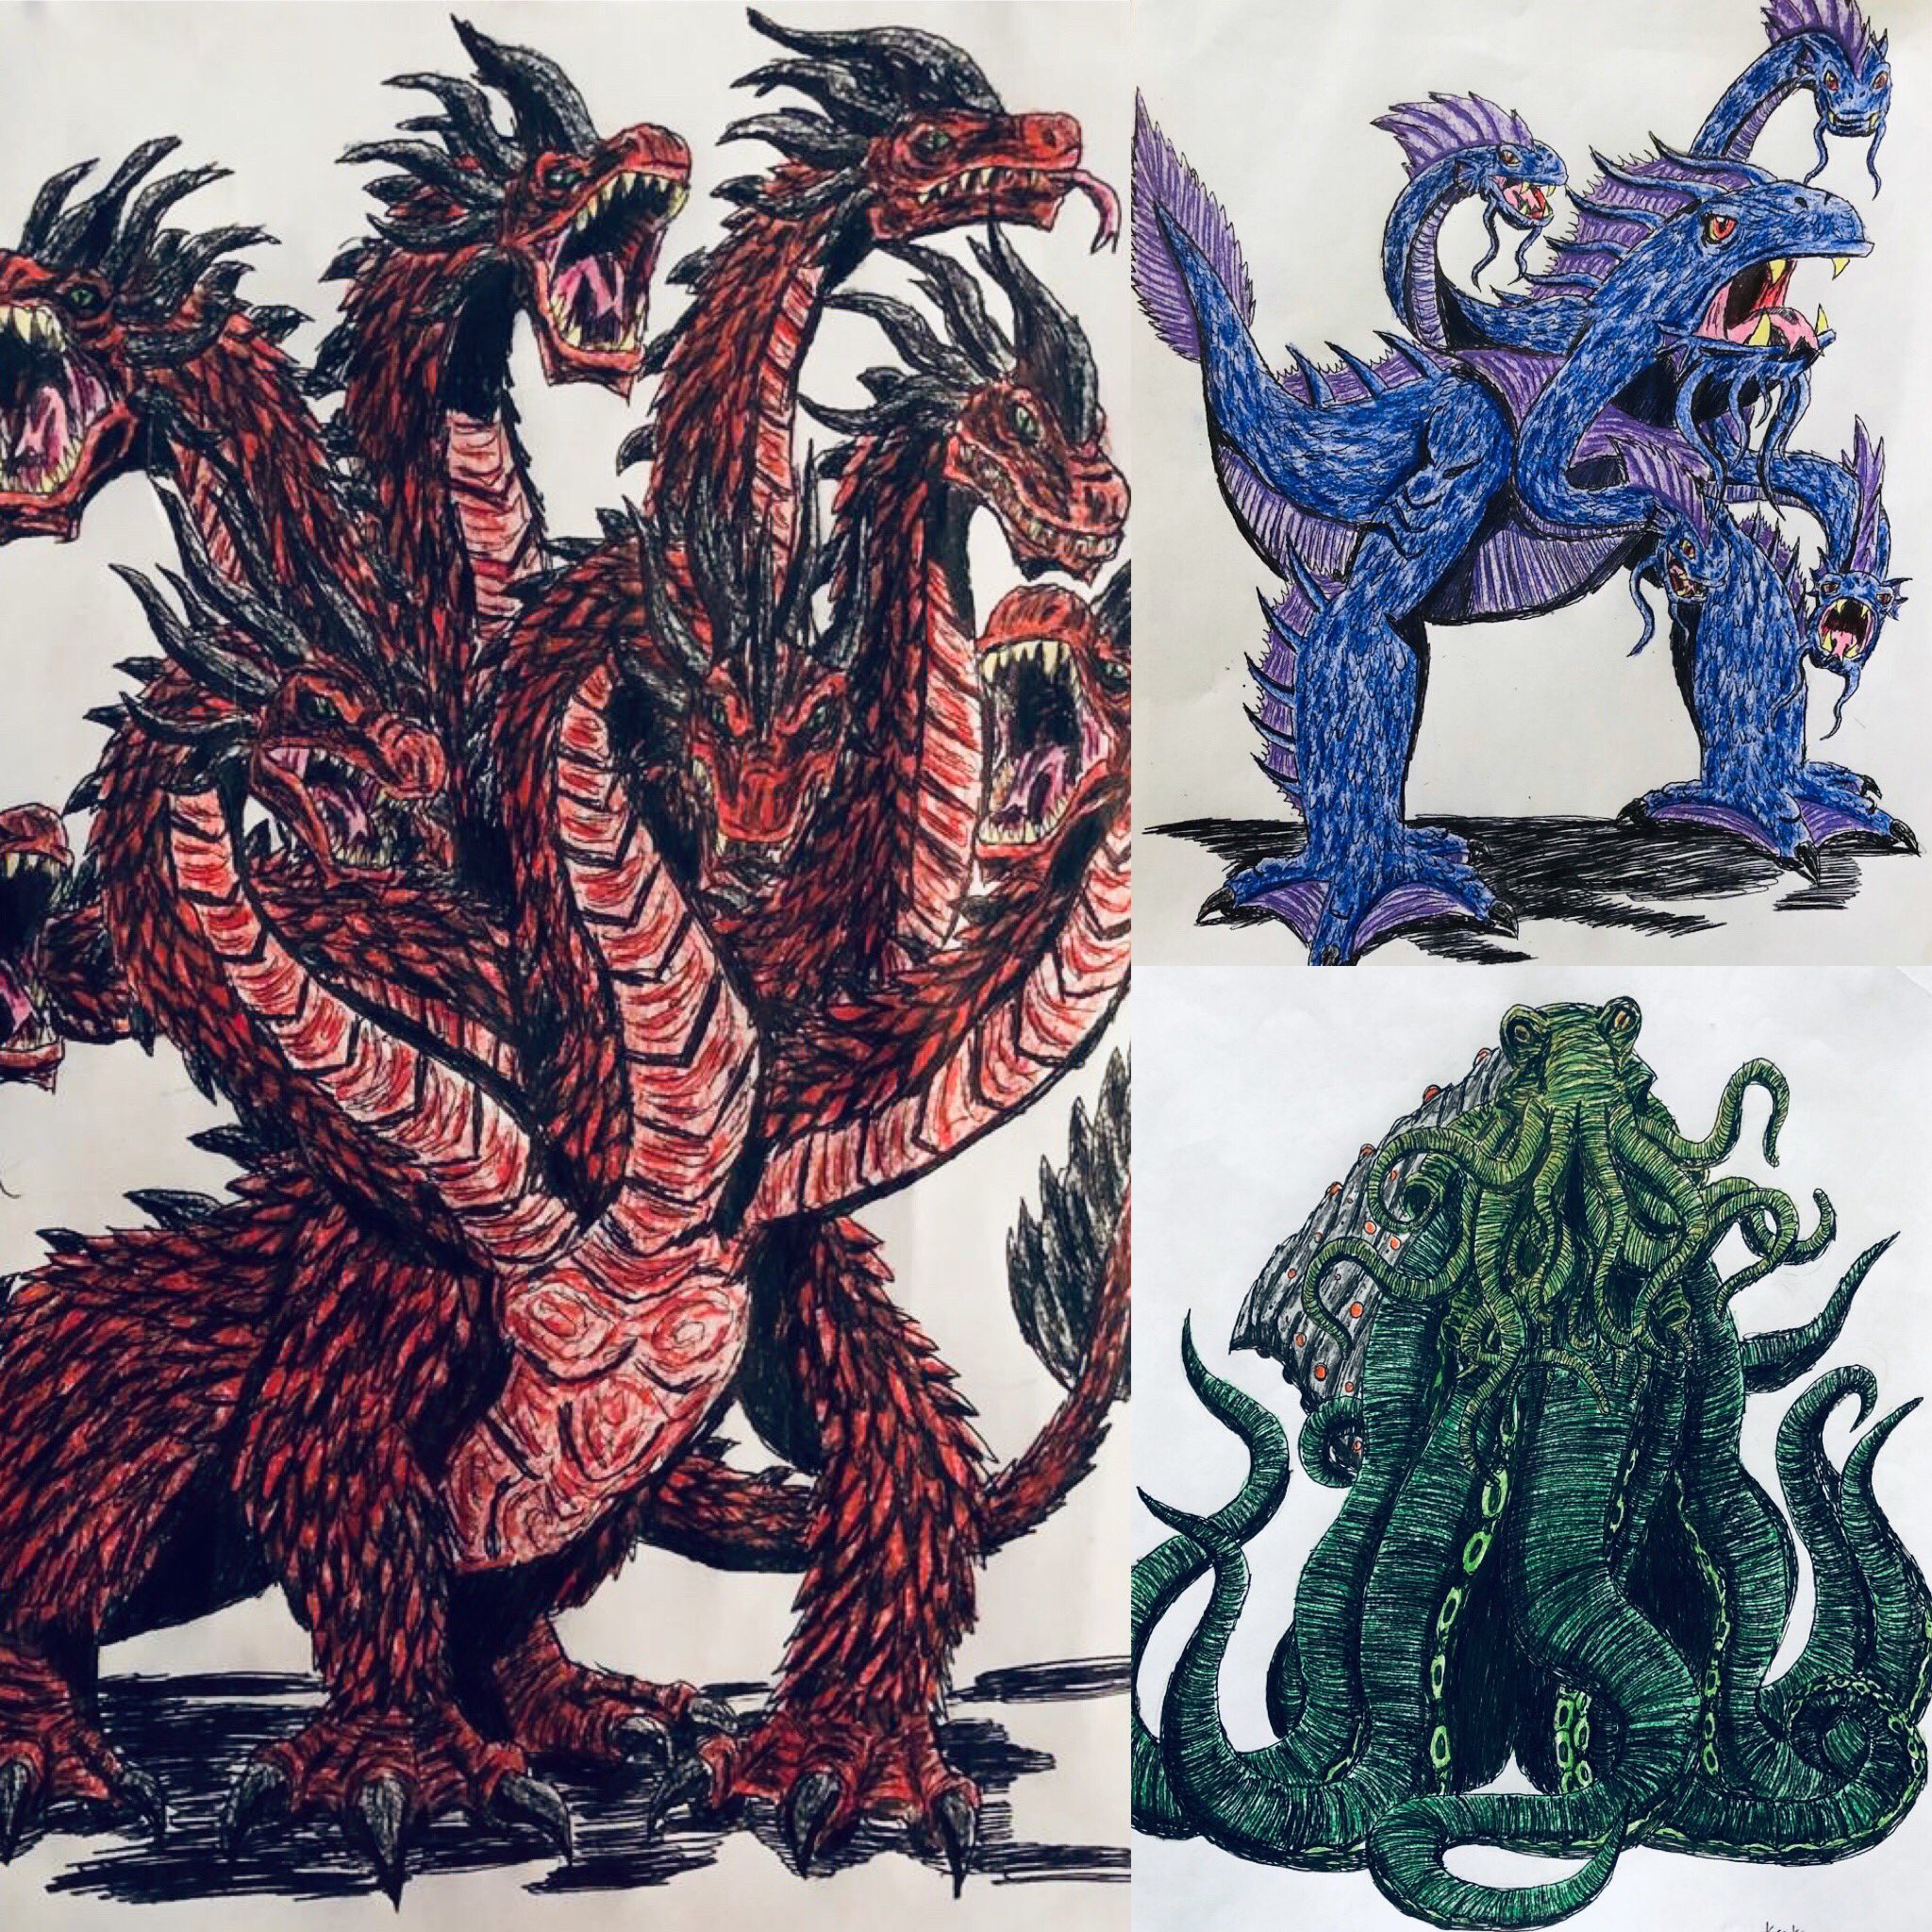 青空 ゴジラ Godzillamovie 海外のゴジラファンが描いたオリジナルの17大怪獣イラストはどれも神々しい見た目で素晴らしい T Co 3kewdus4al Twitter